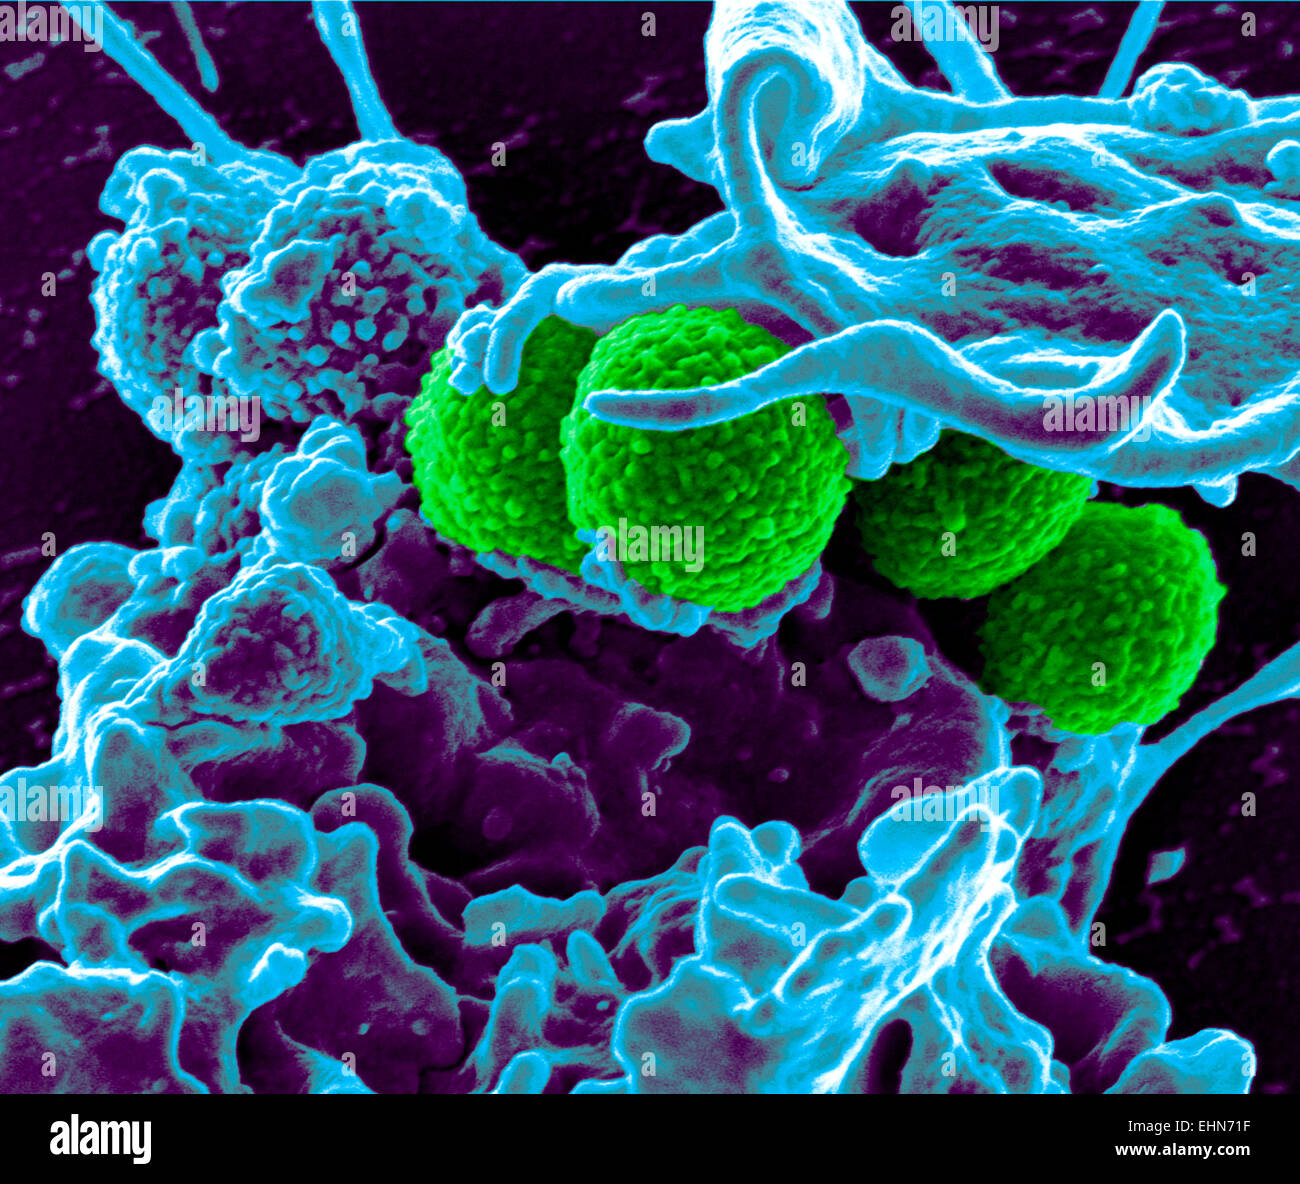 Color análisis micrografía de electrones (SEM) de Staphylococcus aureus meticilino-resistente (SAMR) bacterias. Foto de stock